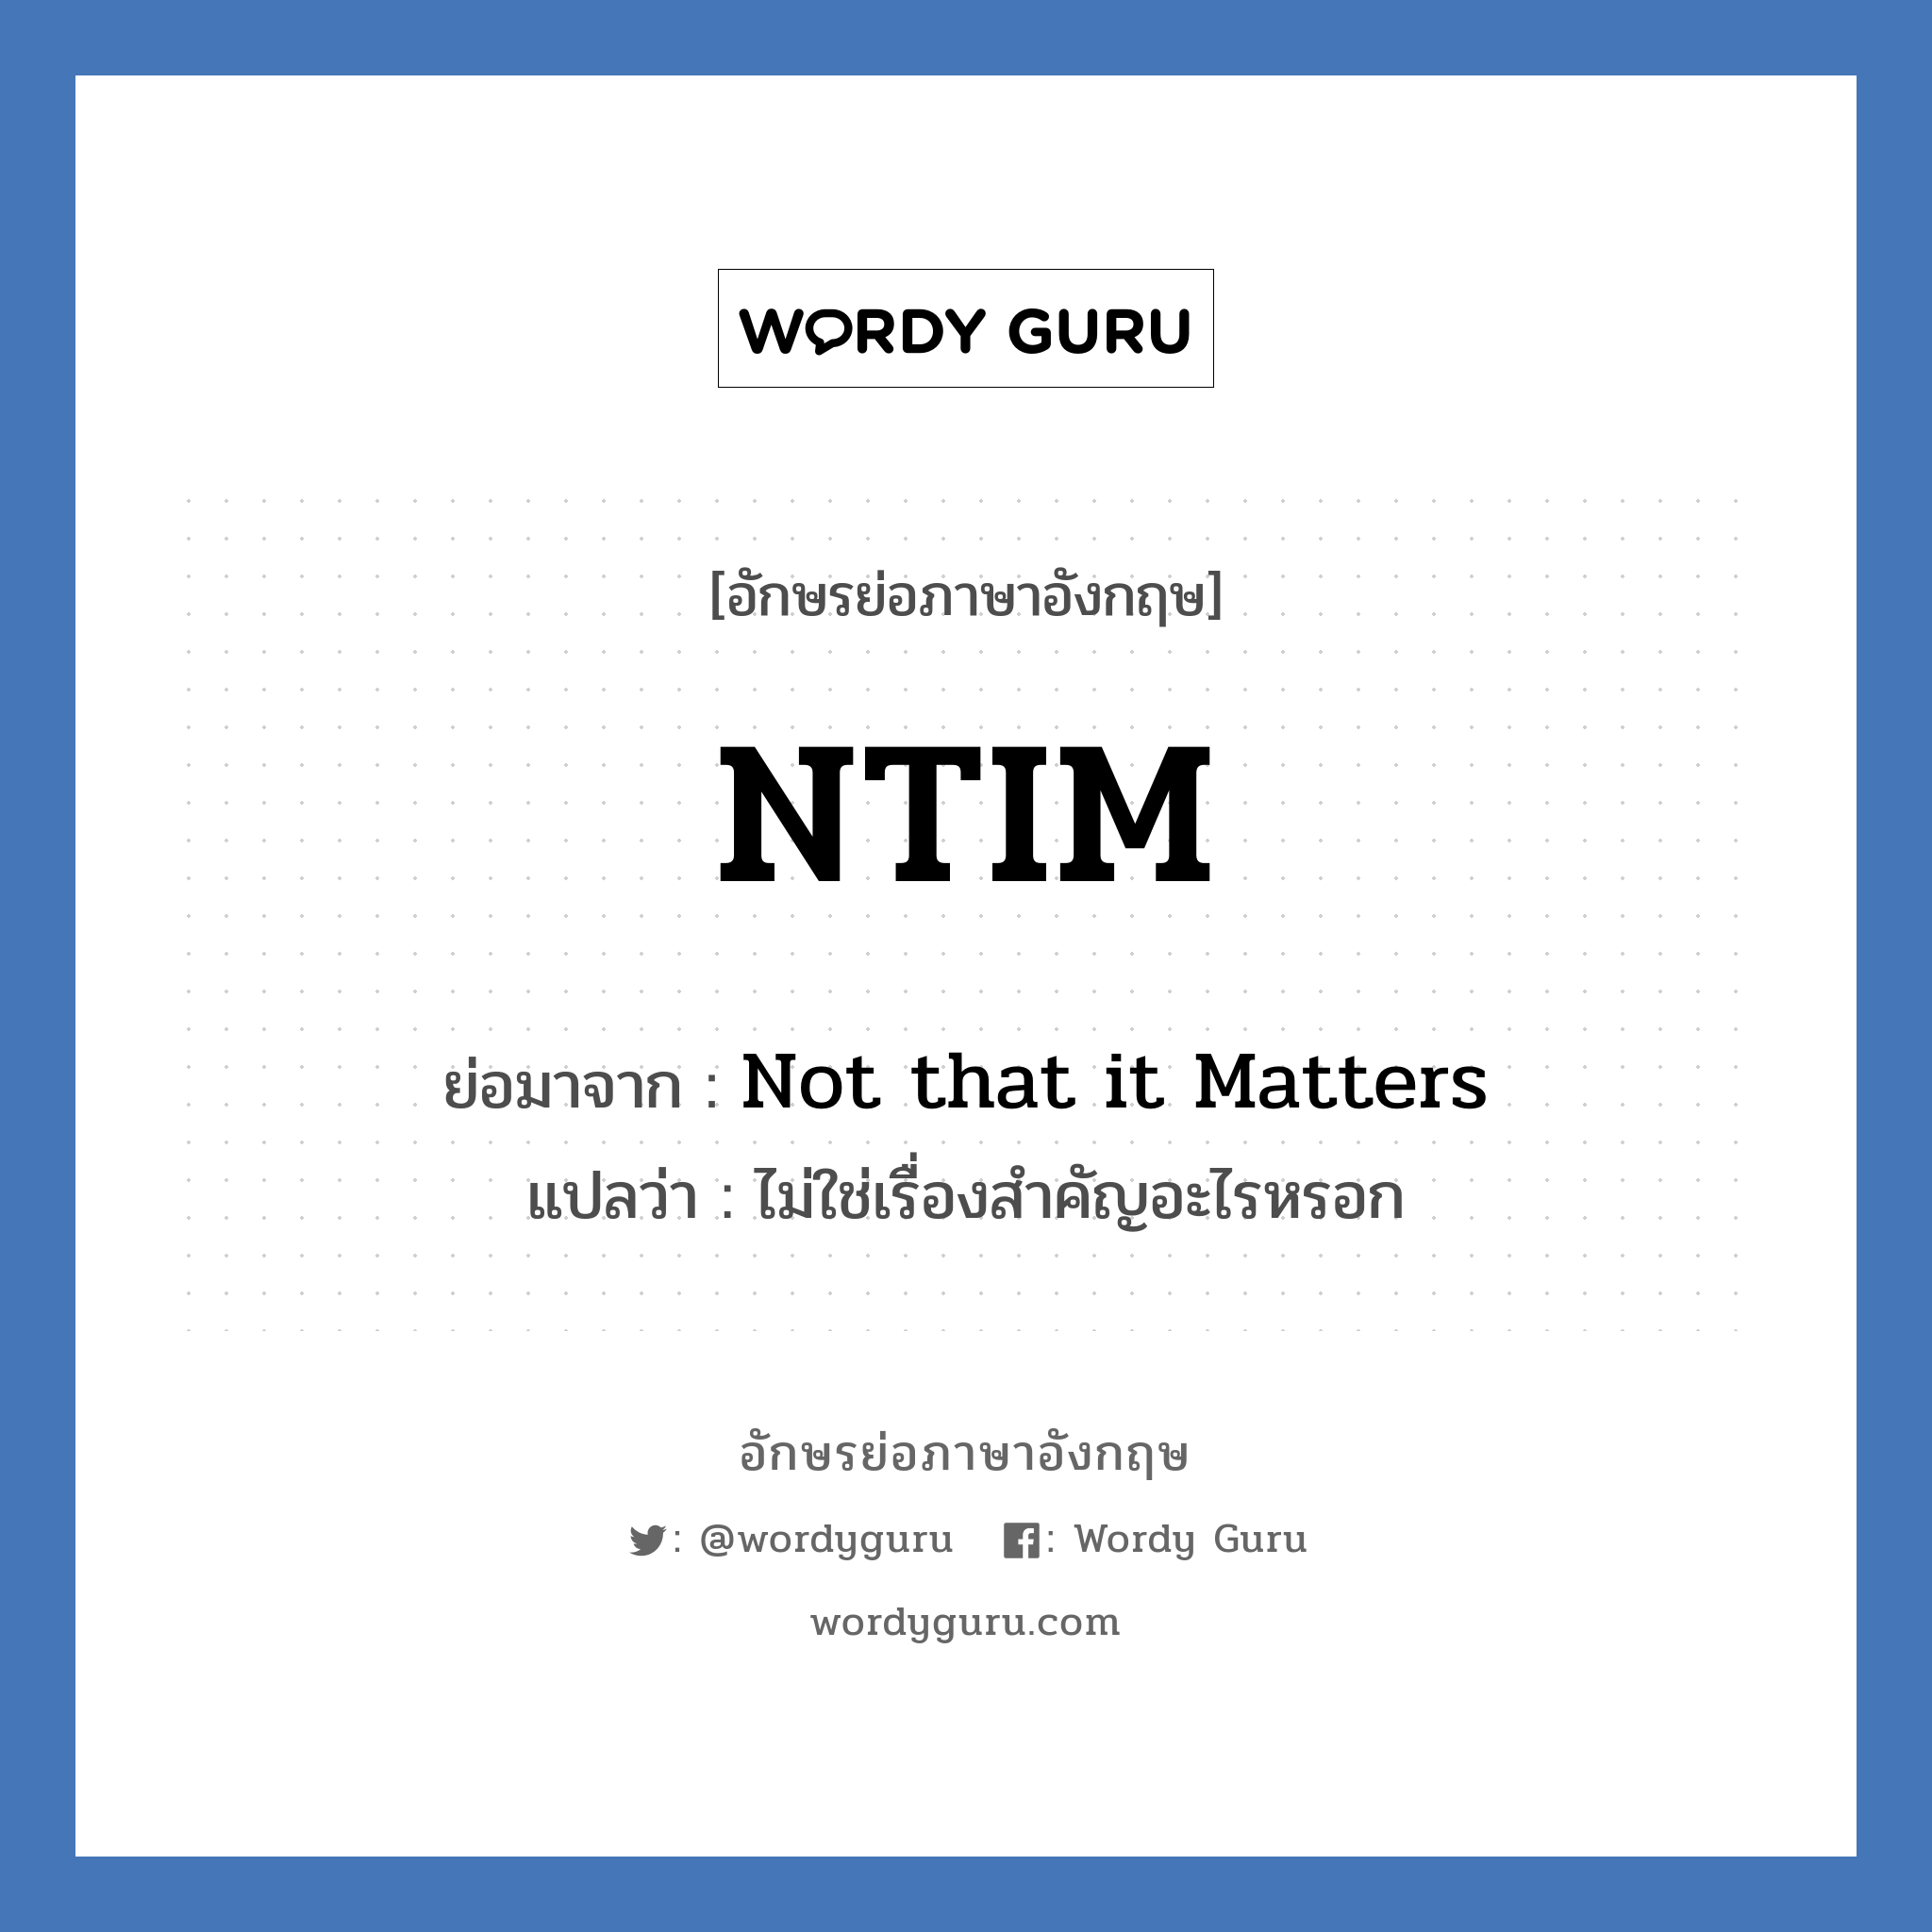 NTIM ย่อมาจาก? แปลว่า?, อักษรย่อภาษาอังกฤษ NTIM ย่อมาจาก Not that it Matters แปลว่า ไม่ใช่เรื่องสำคัญอะไรหรอก